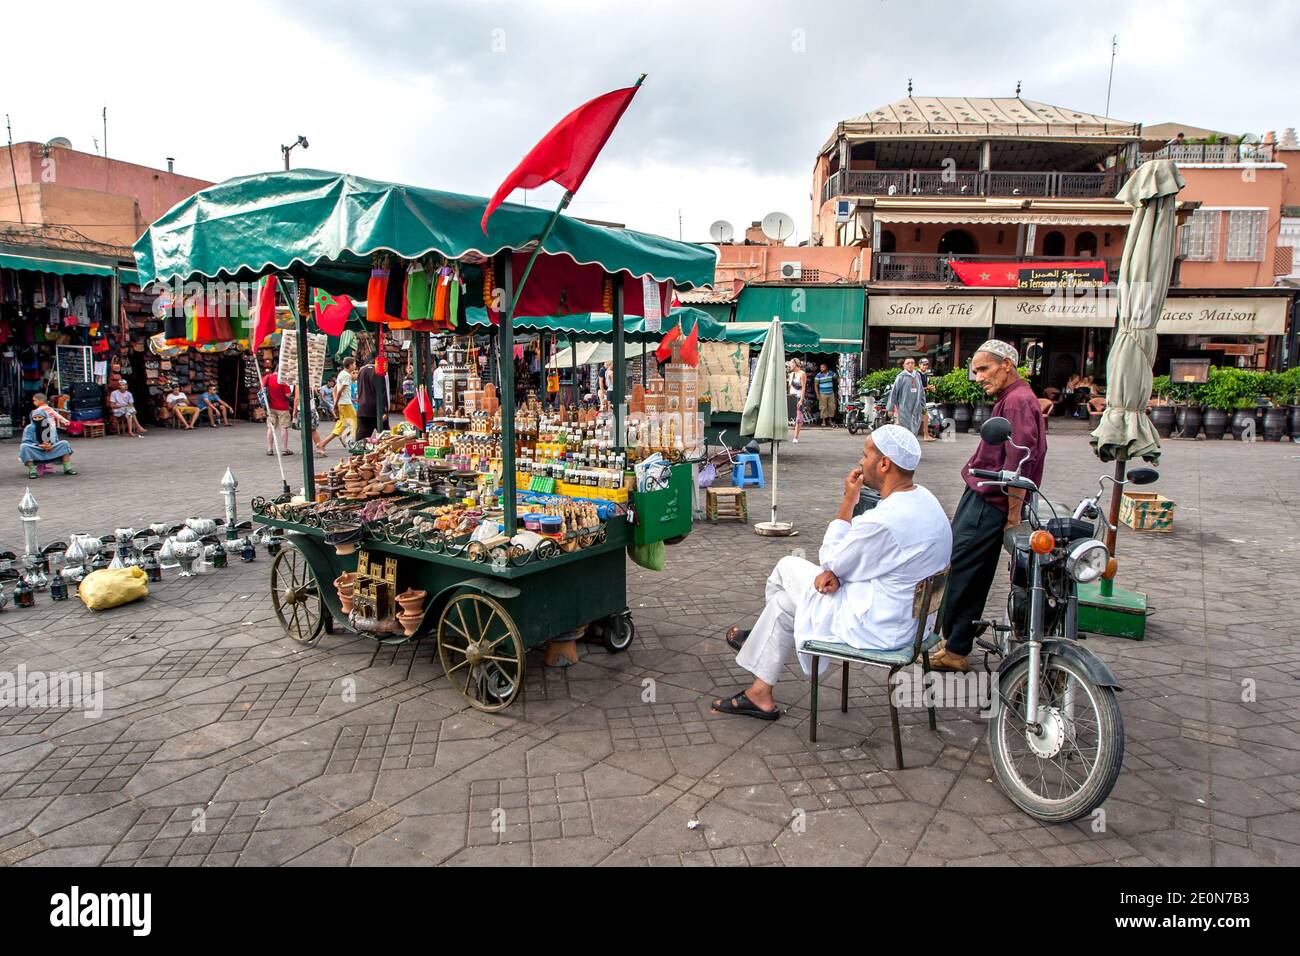 Un uomo siede accanto al suo stand portatile che vende una varietà di beni a Djemaa el-Fna, la piazza principale della medina di Marrakech in Marocco. Foto Stock